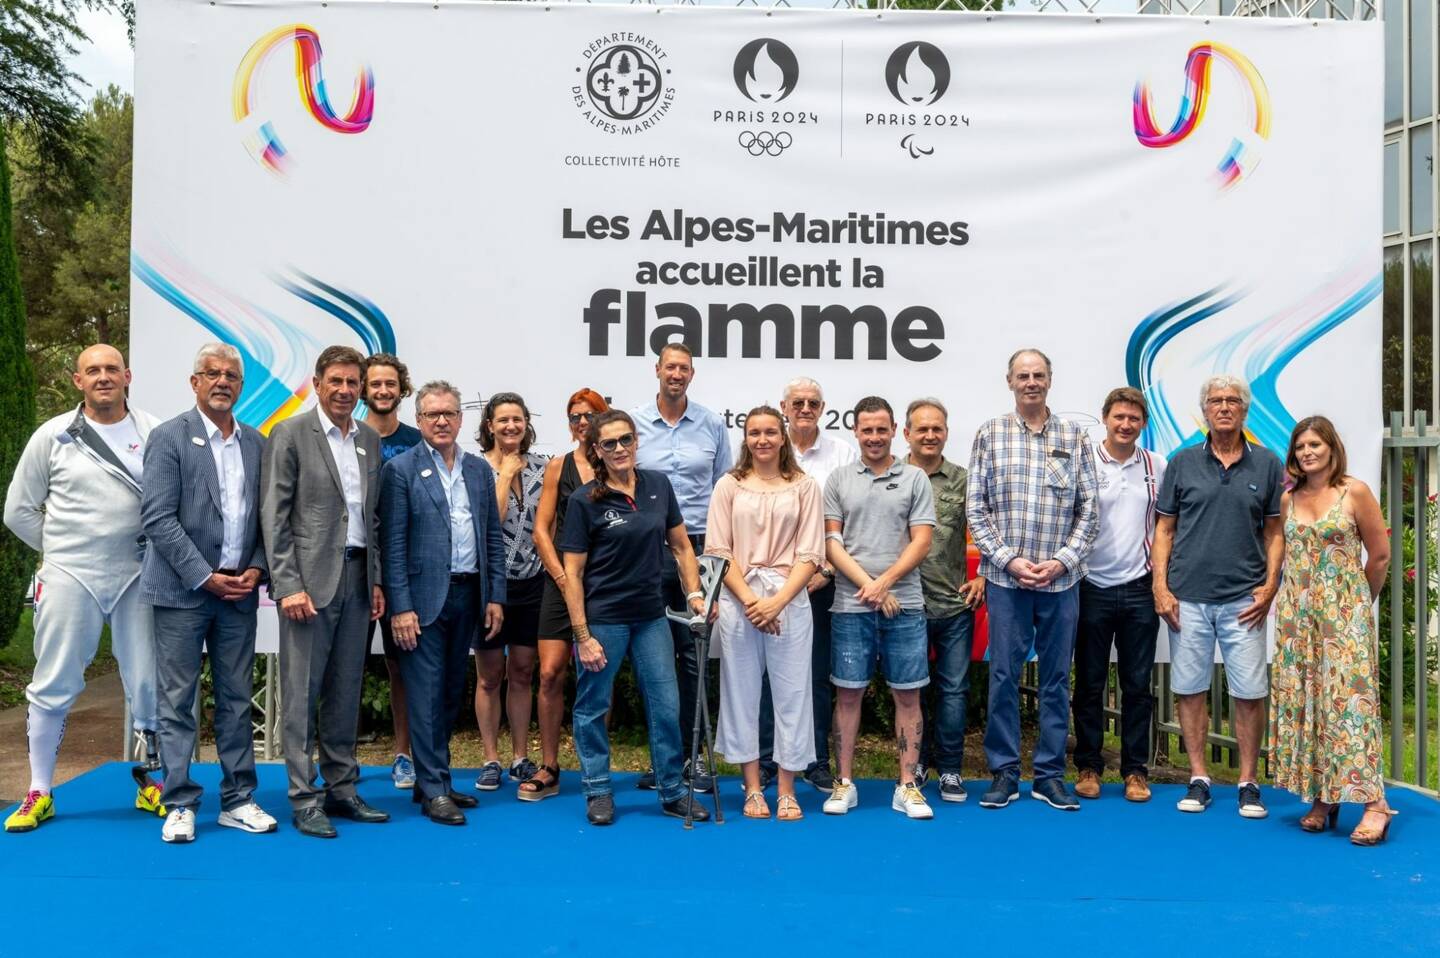 De nombreux athlètes et ex-athlètes emblématiques du département, dont Alain Bernard et Emilie Fer, étaient présents.